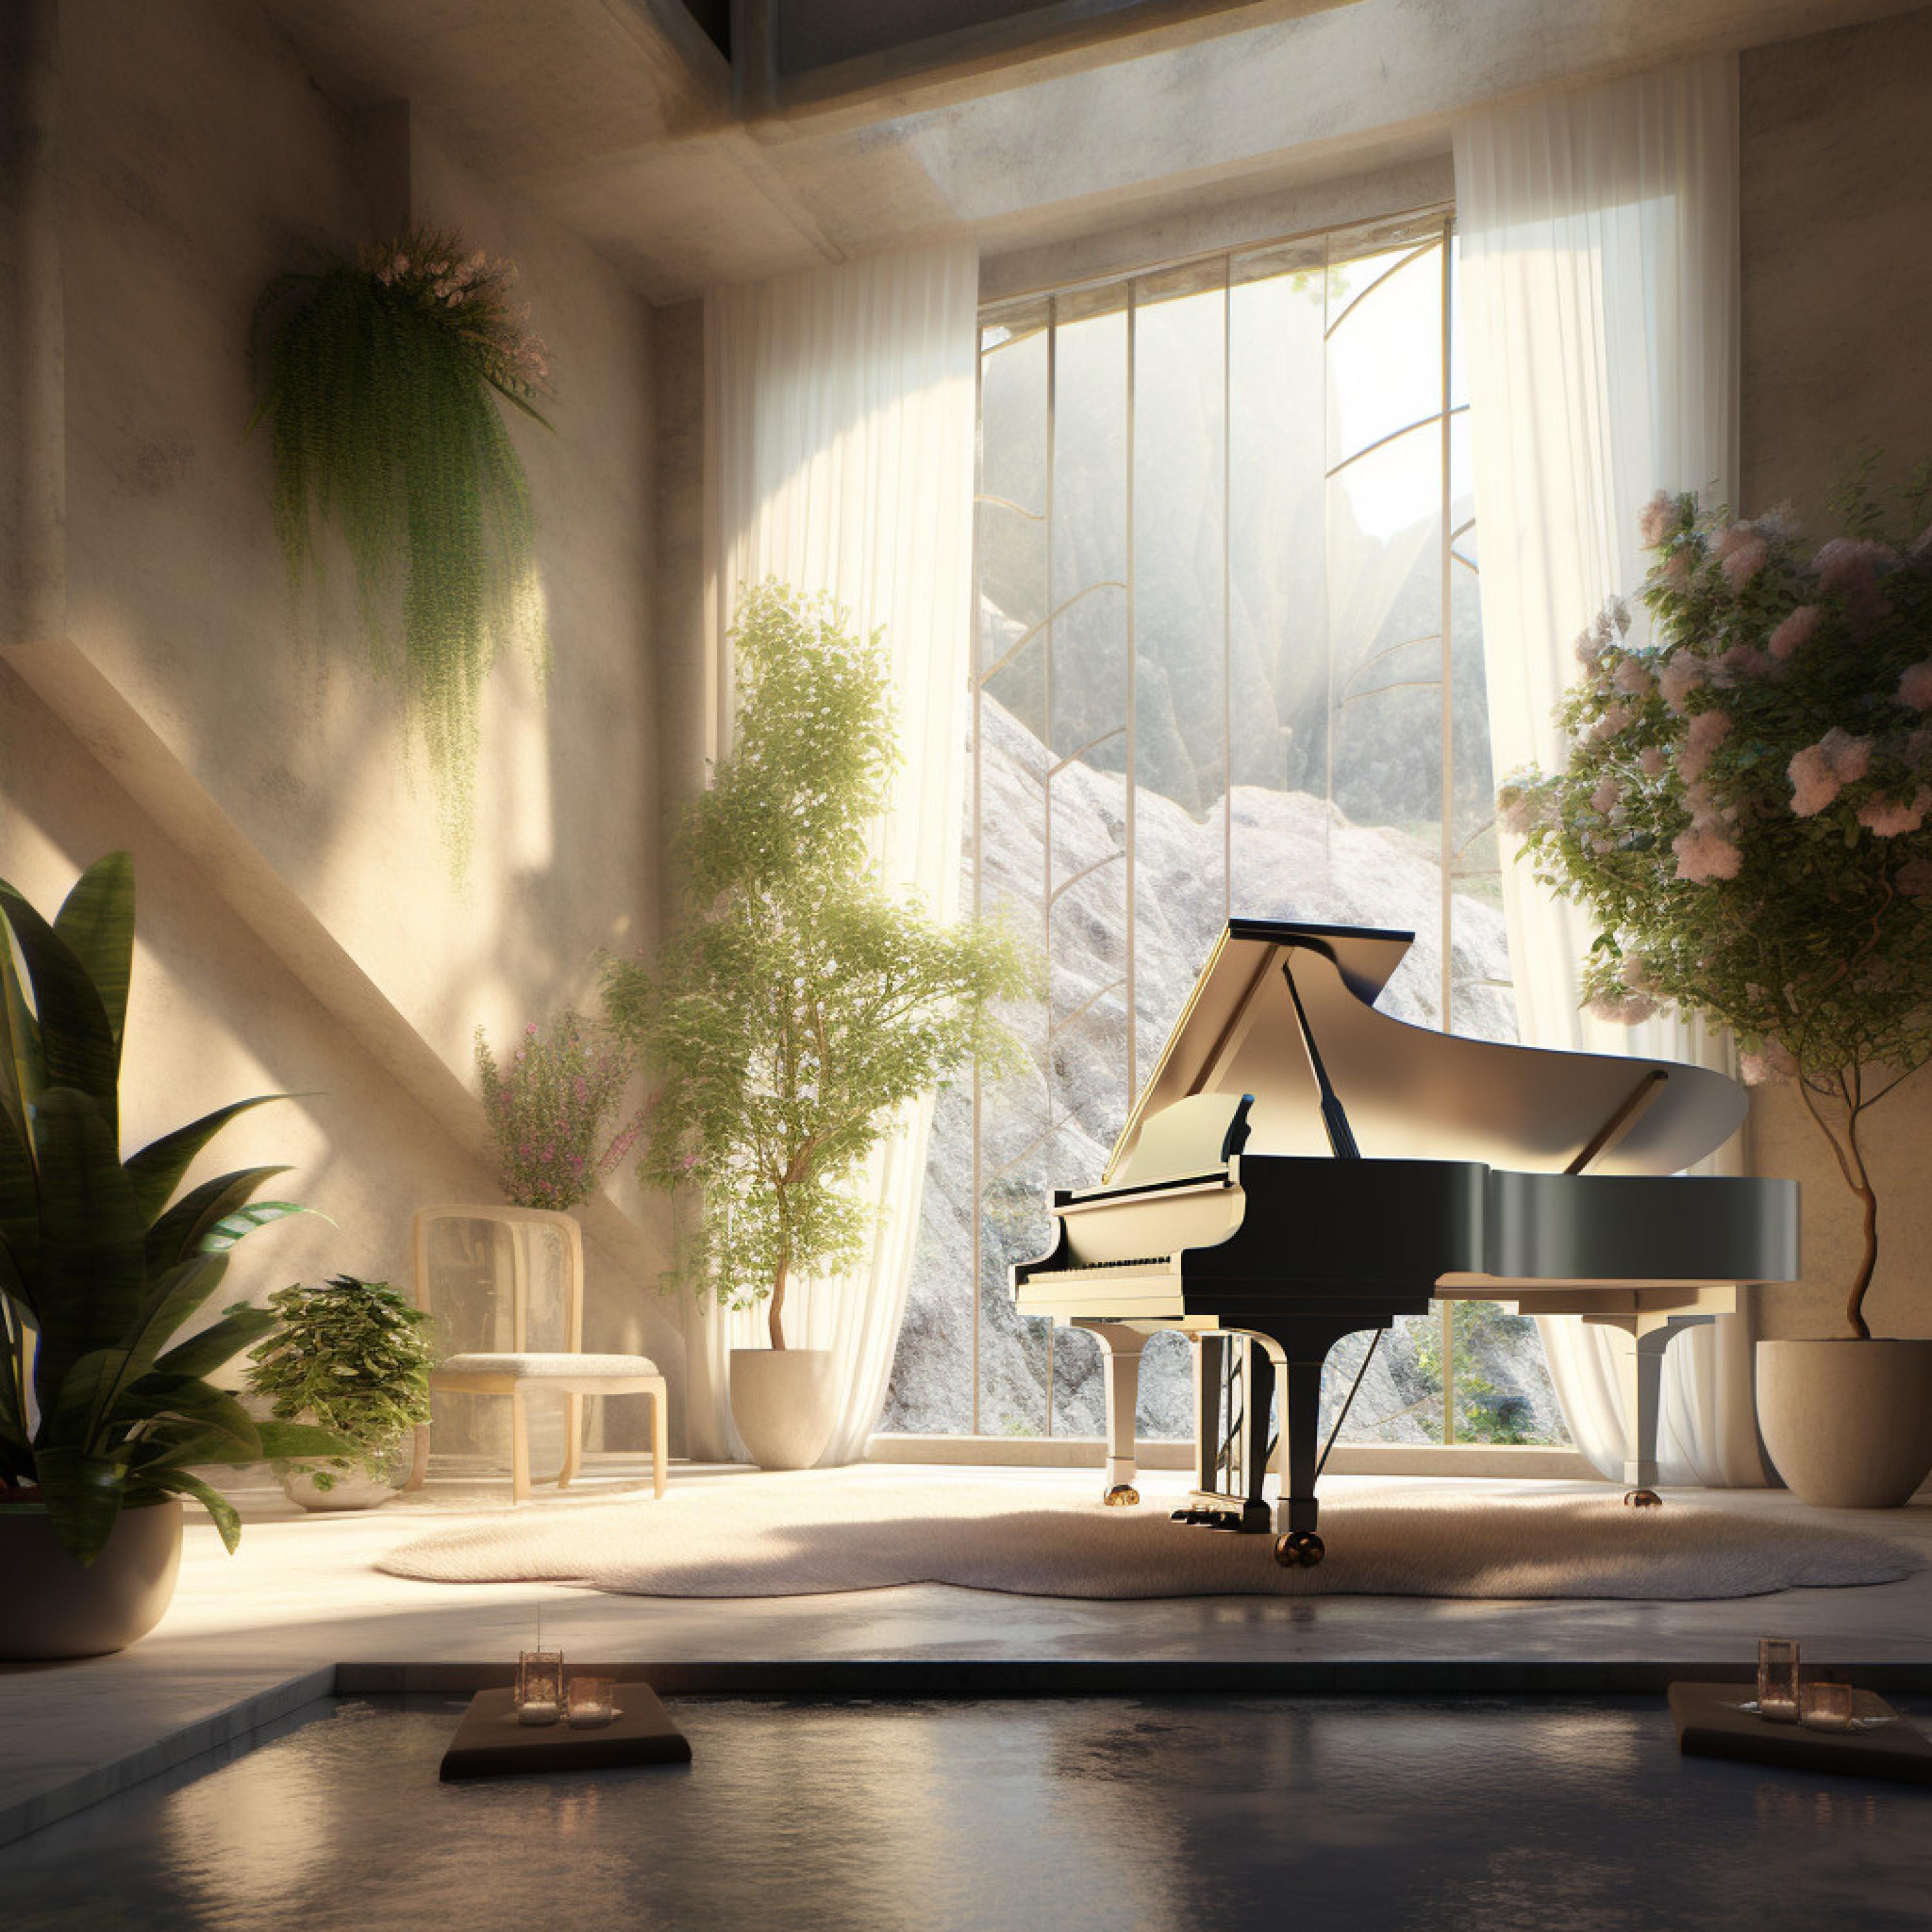 Piano Relaxation - Piano Harmony Massage Serenity